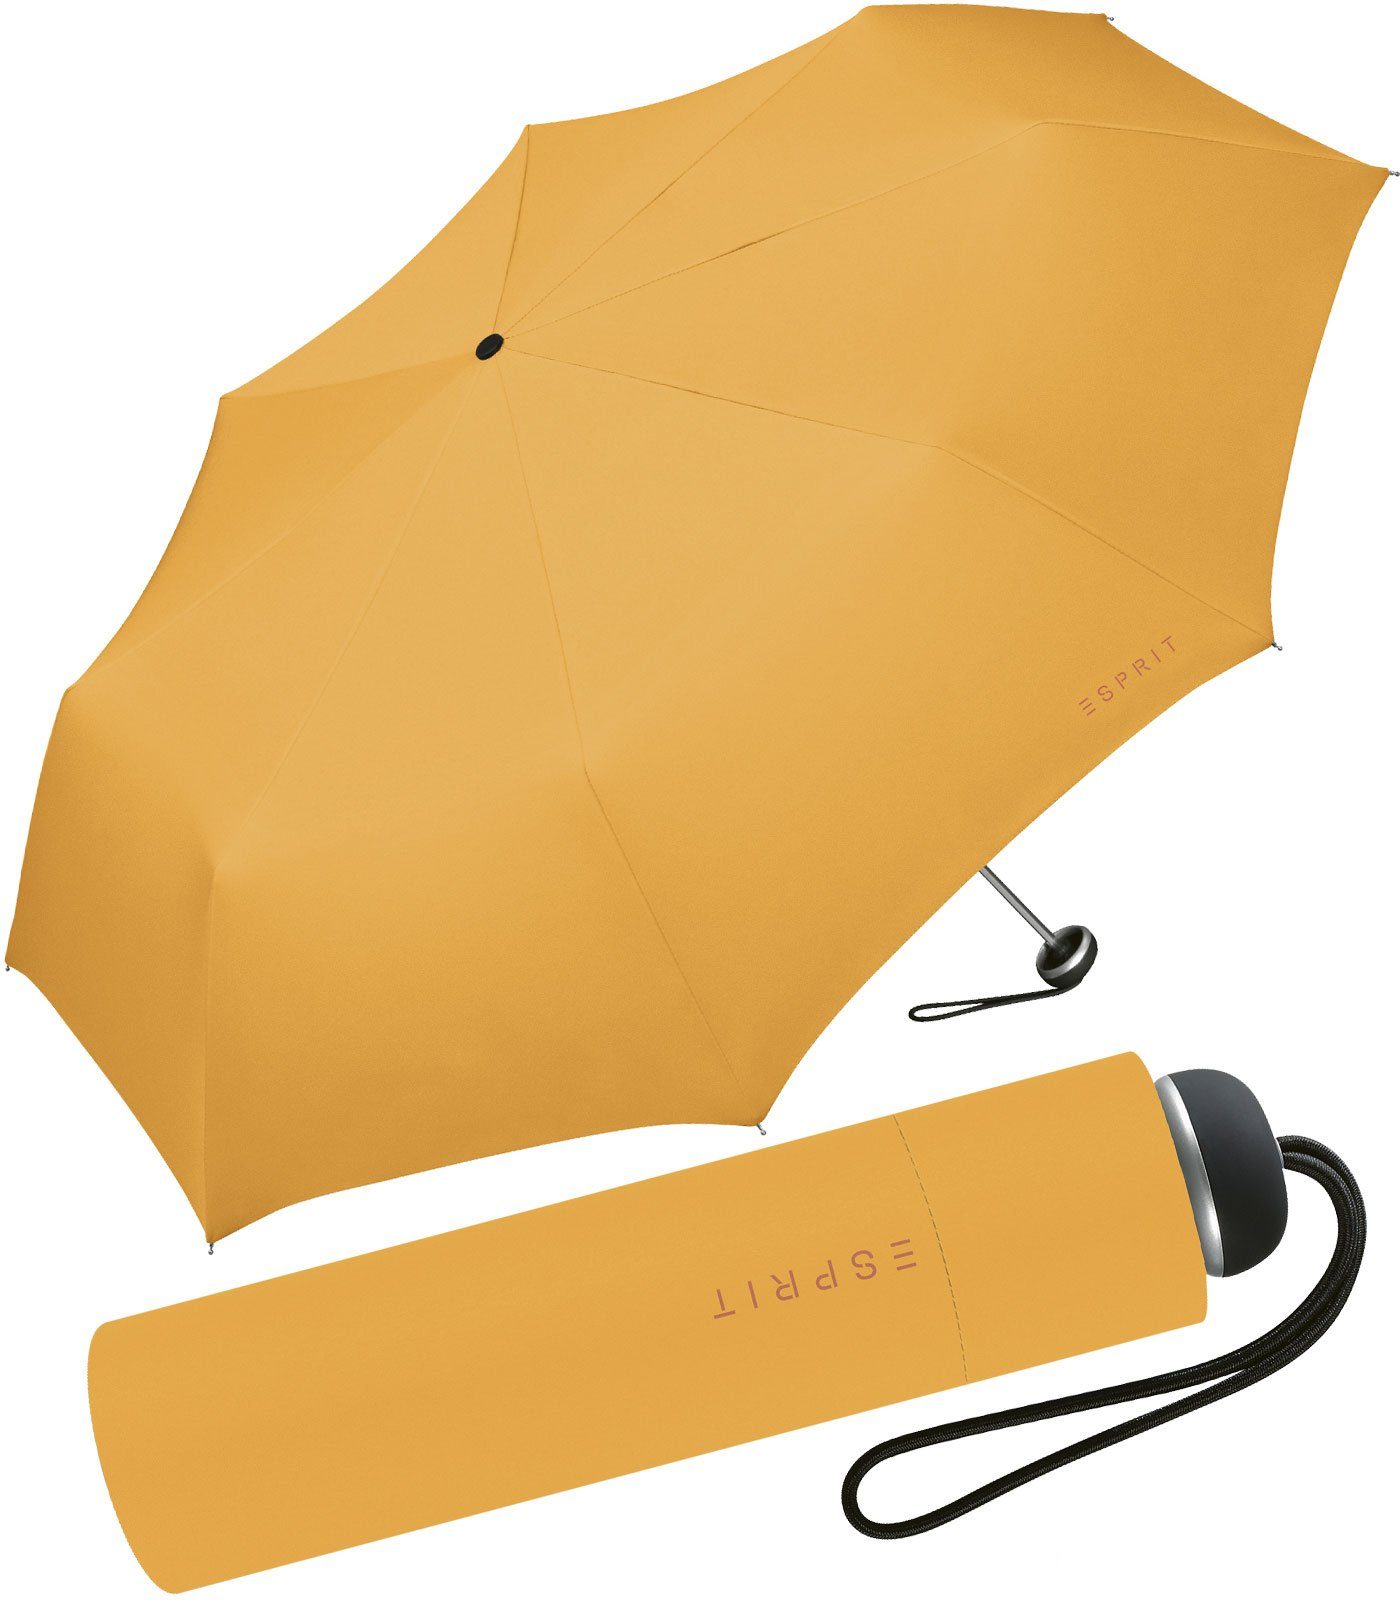 Esprit Taschenregenschirm leichter, handlicher Schirm für Damen, Begleiter in modischen Farben - butterscotch gelb